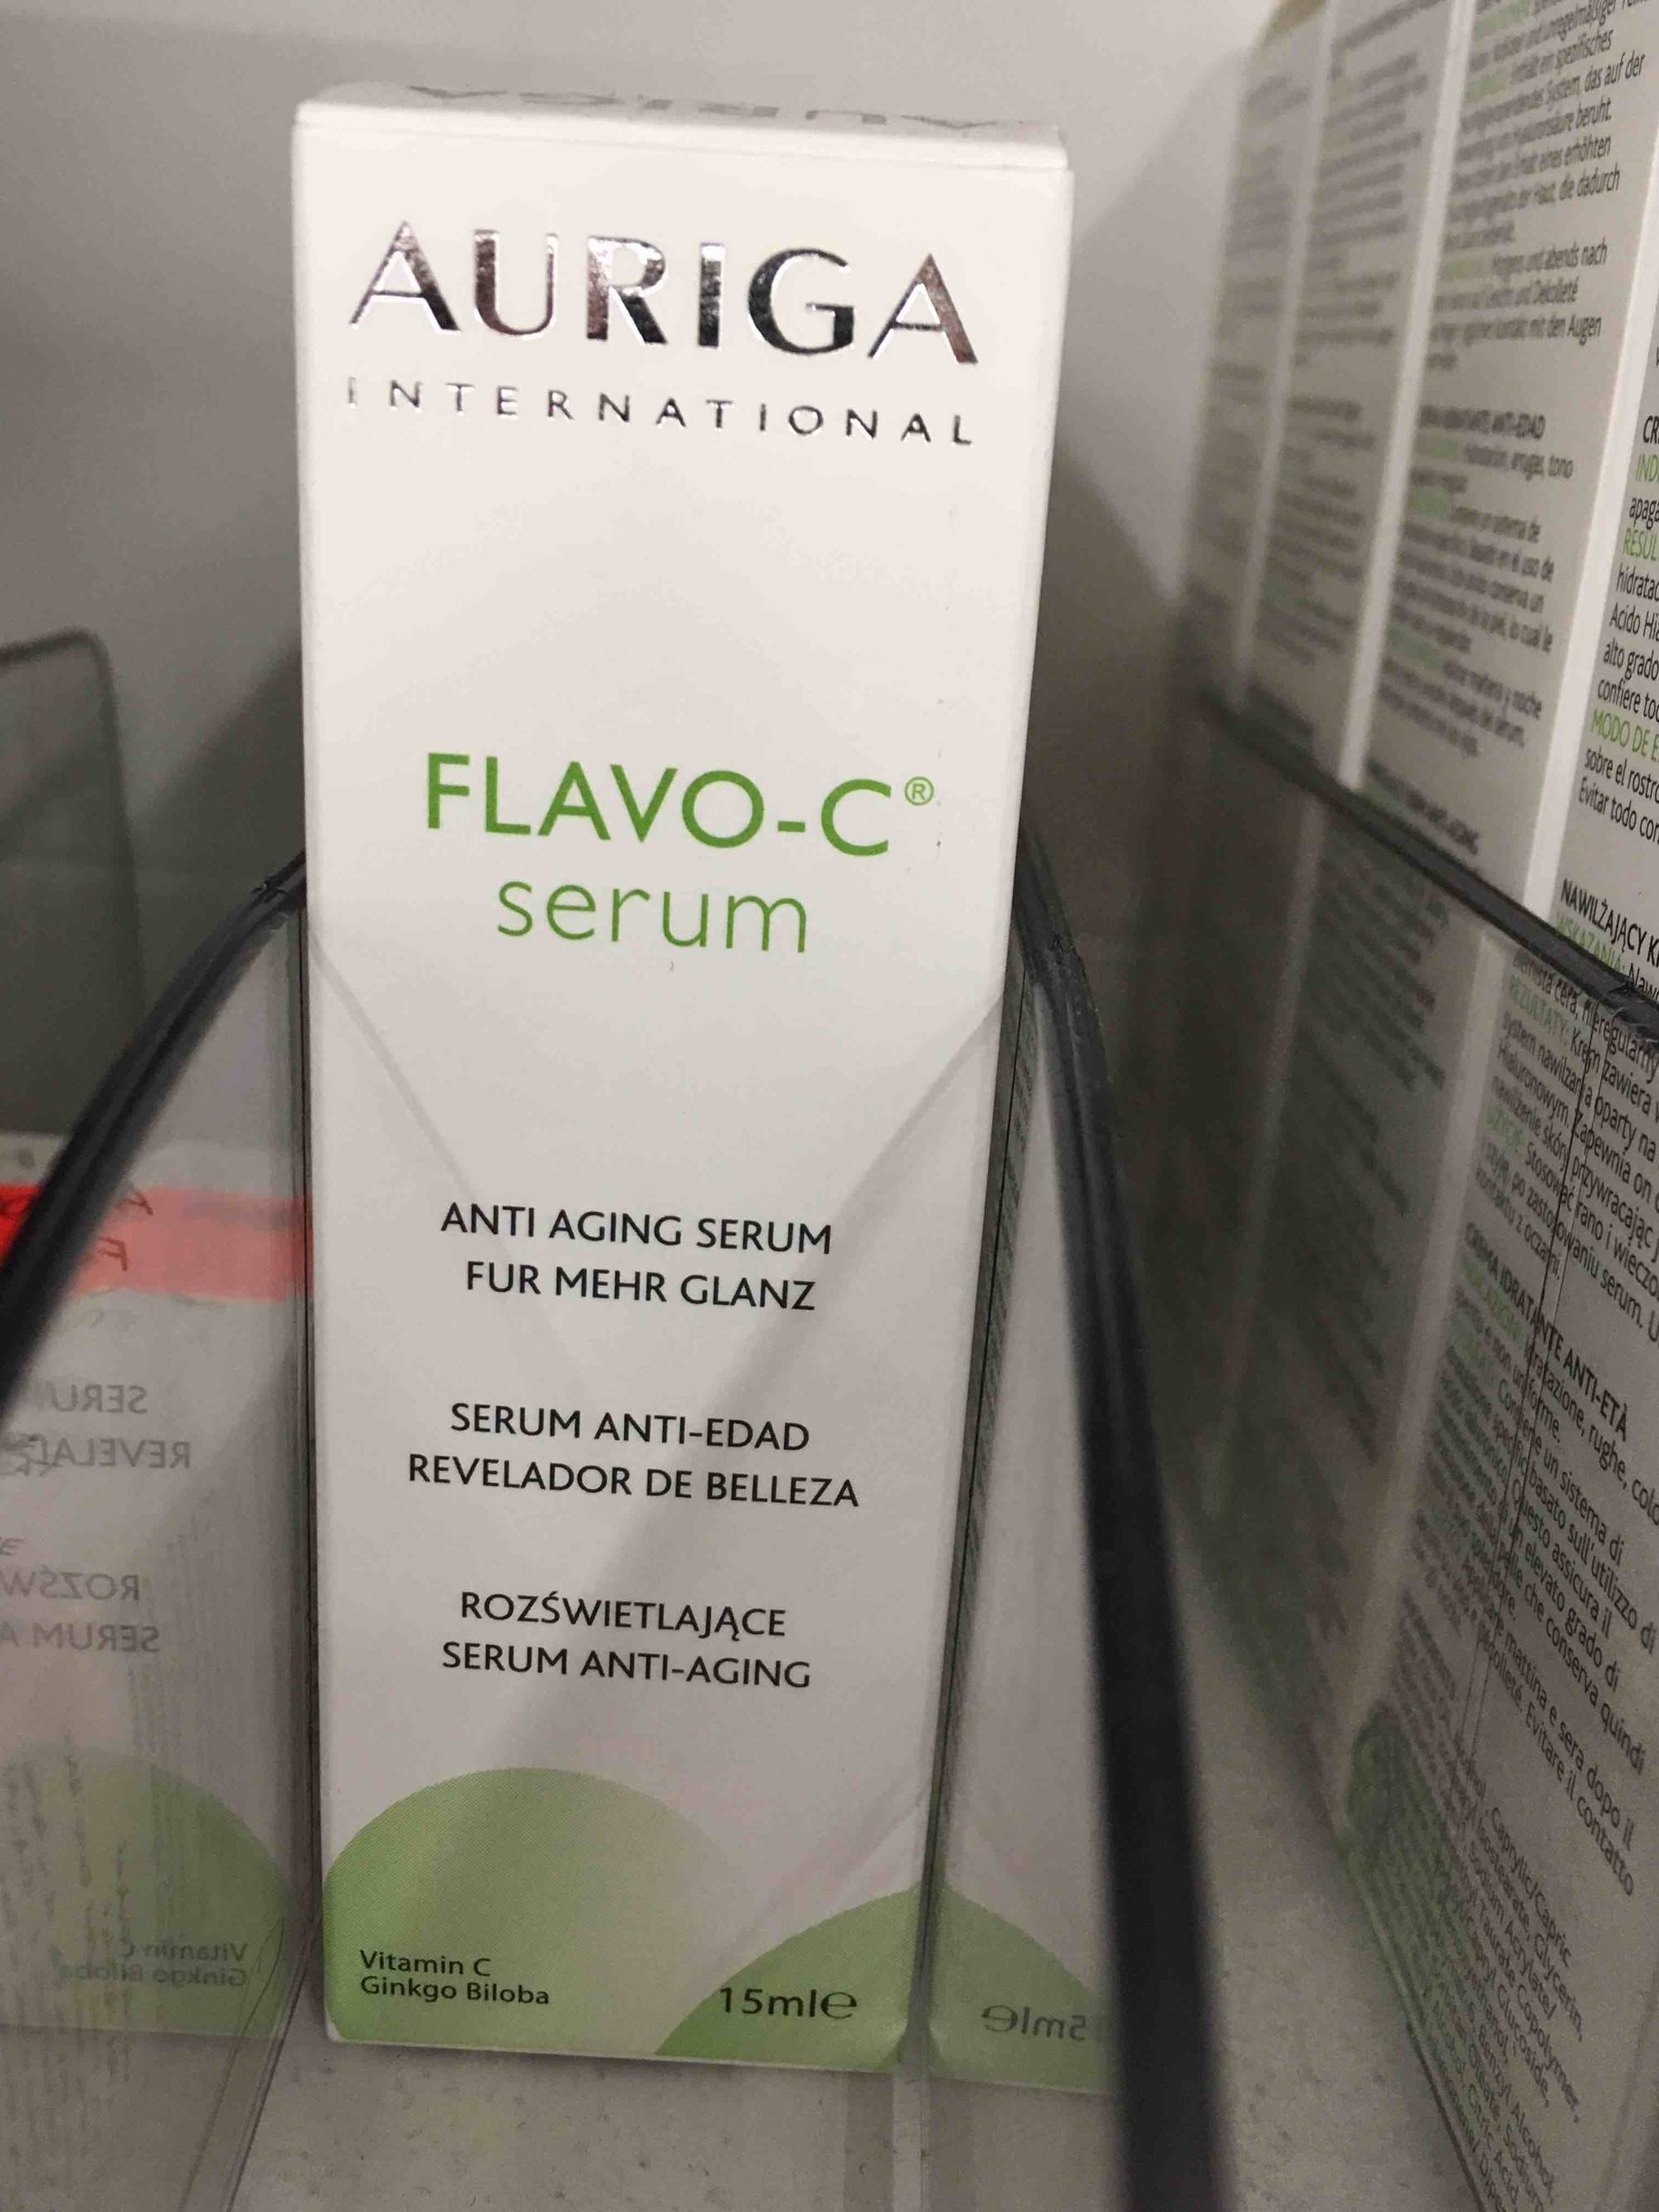 AURIGA - Flavo-C - Anti aging serum